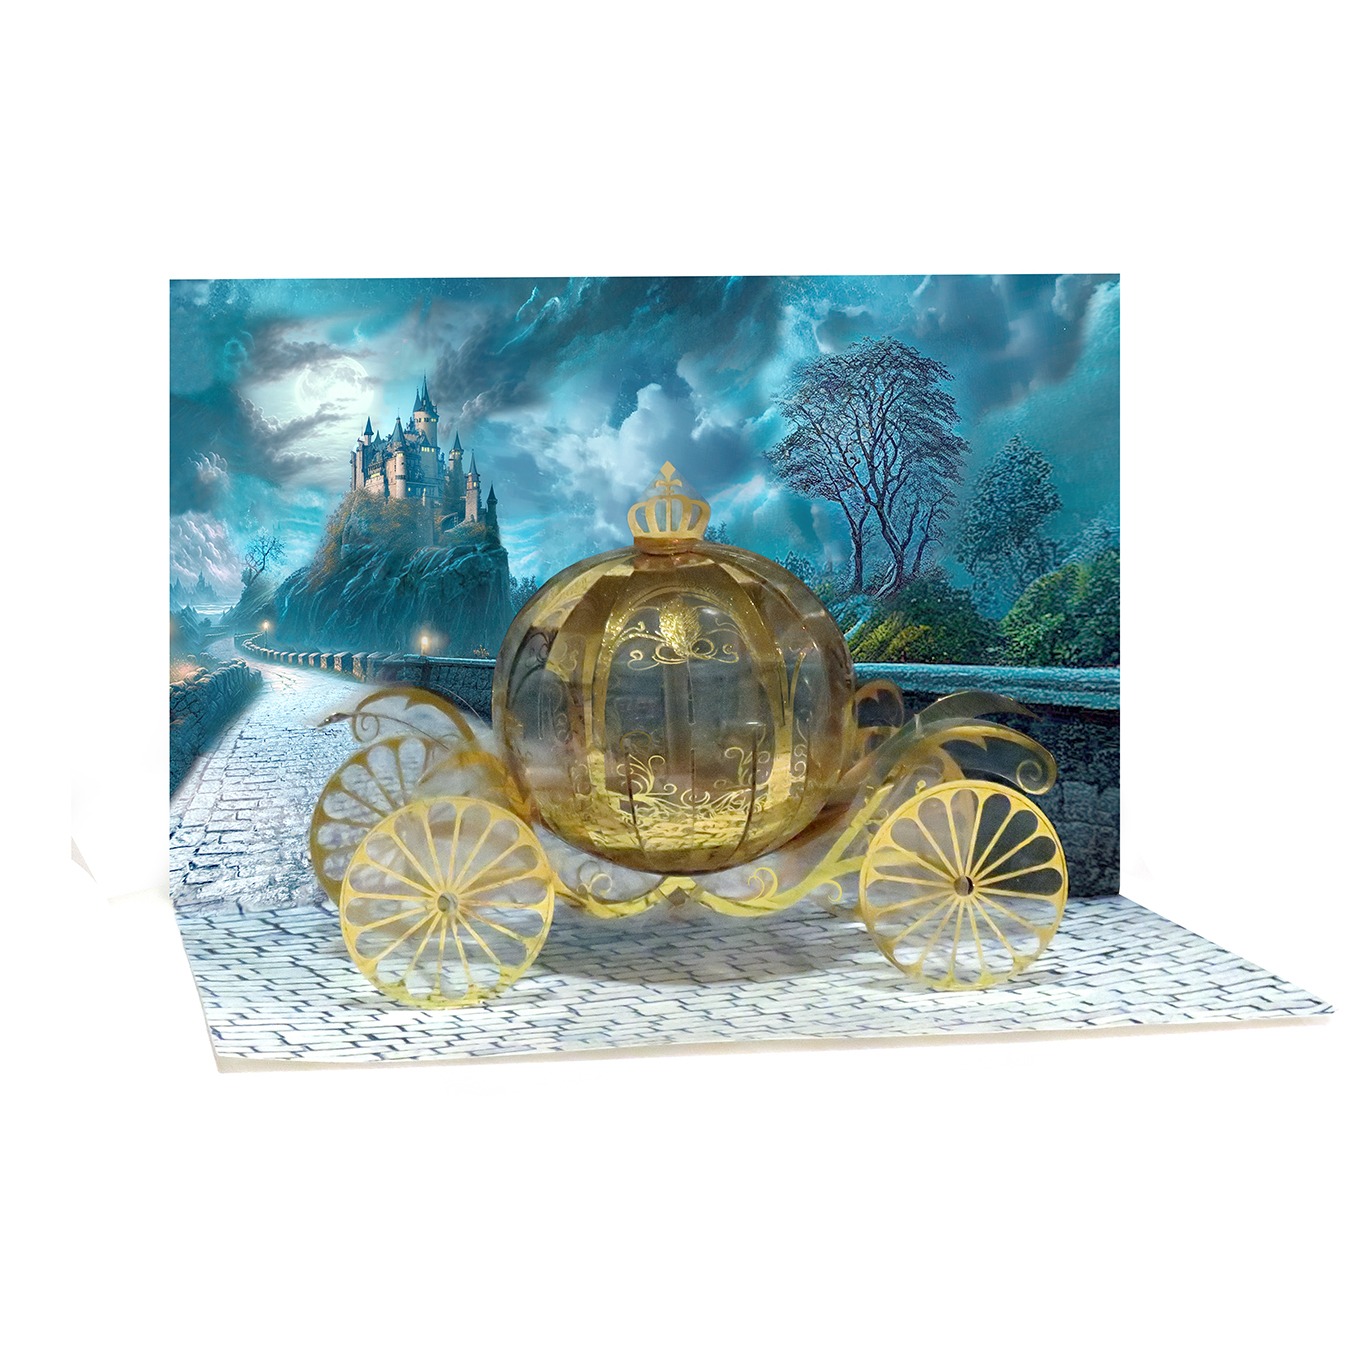 Cinderella Carriage 4382